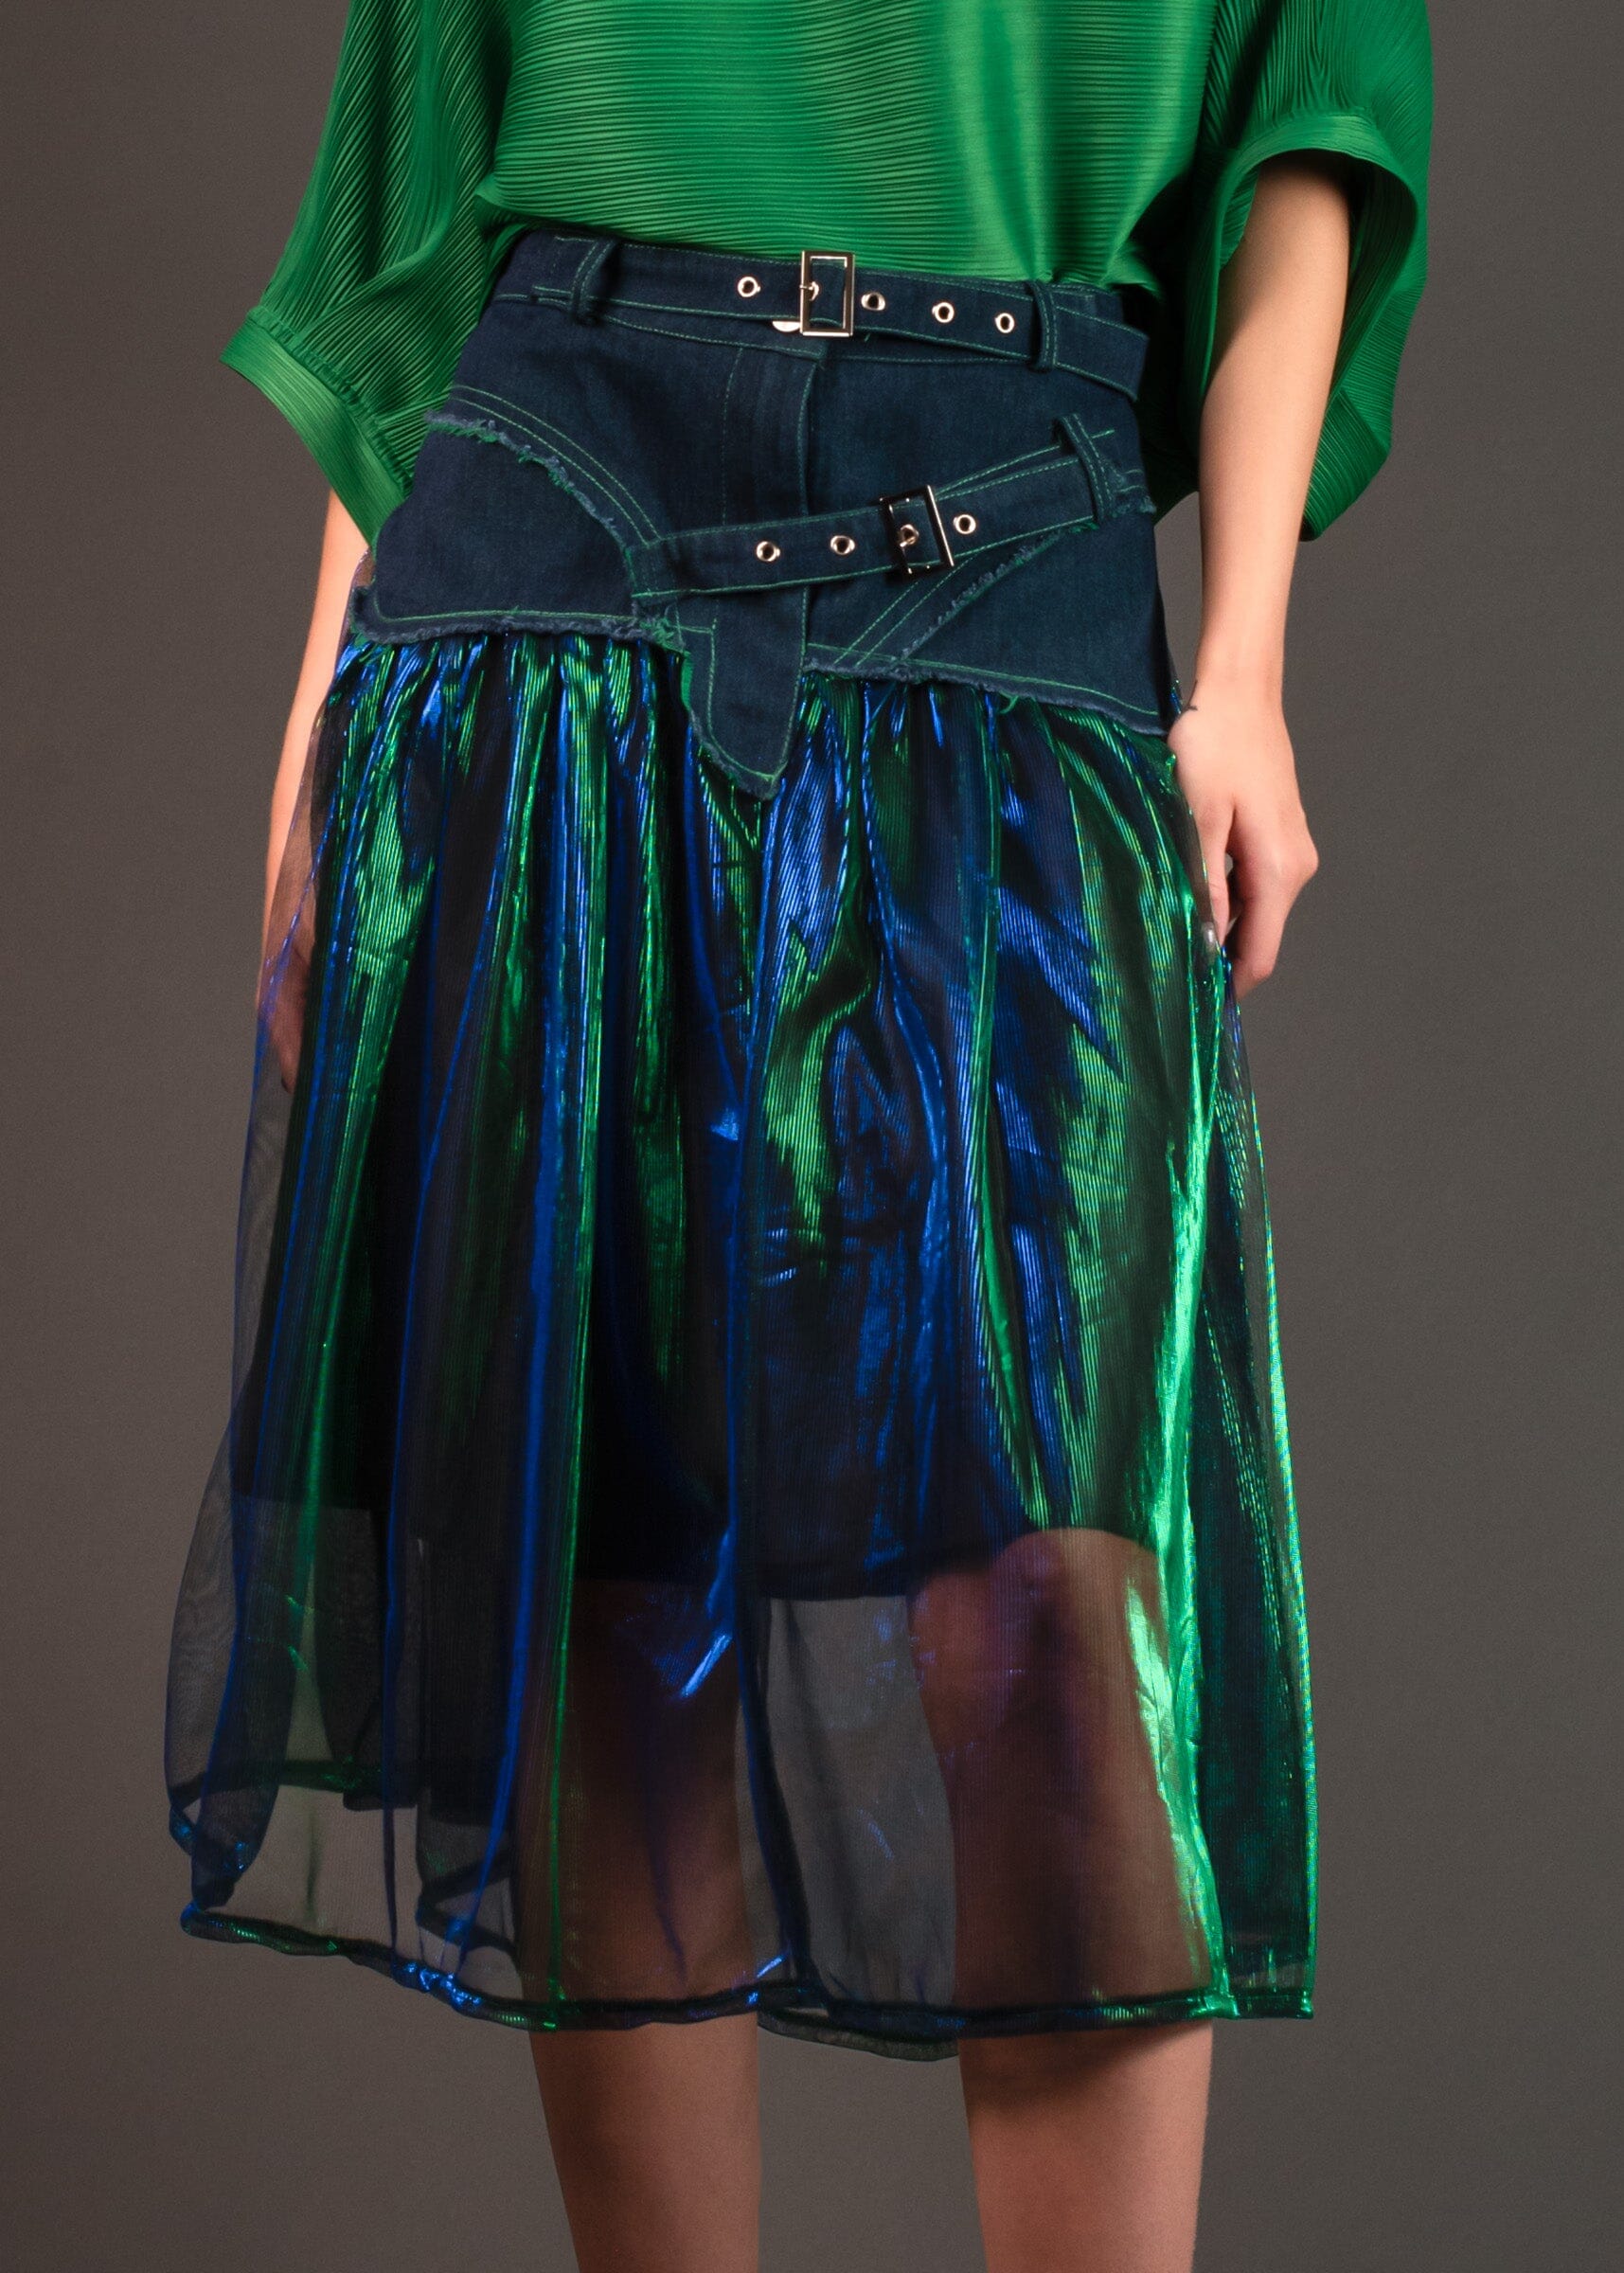 Sheer Metallic Denim Tulle Skirt Kate Hewko 